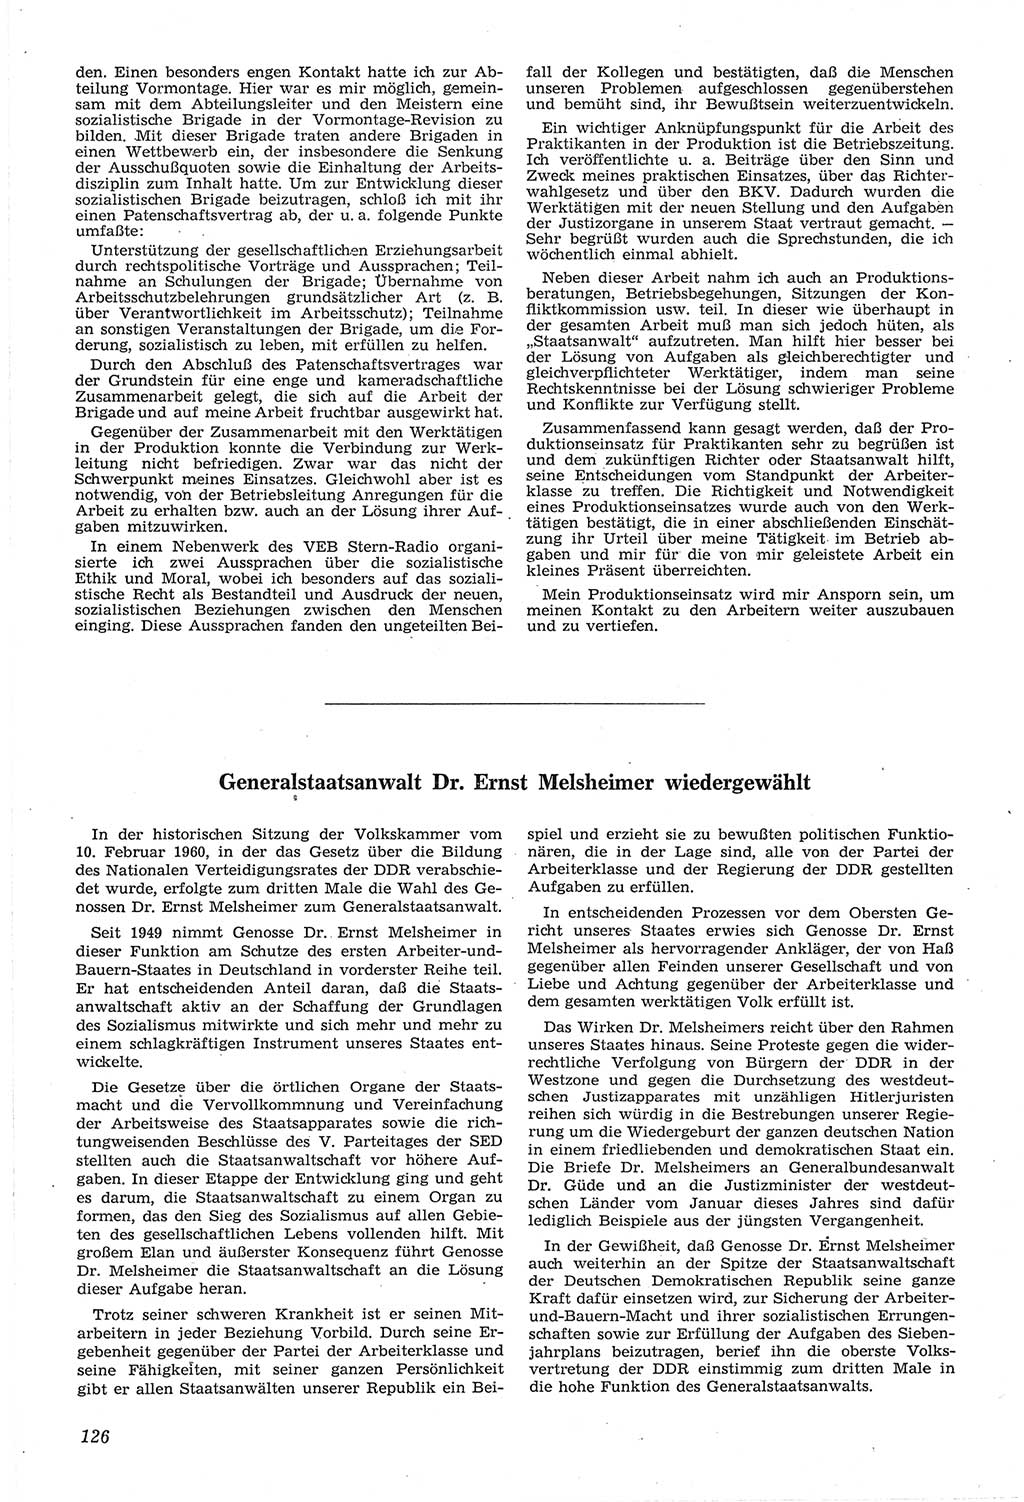 Neue Justiz (NJ), Zeitschrift für Recht und Rechtswissenschaft [Deutsche Demokratische Republik (DDR)], 14. Jahrgang 1960, Seite 126 (NJ DDR 1960, S. 126)